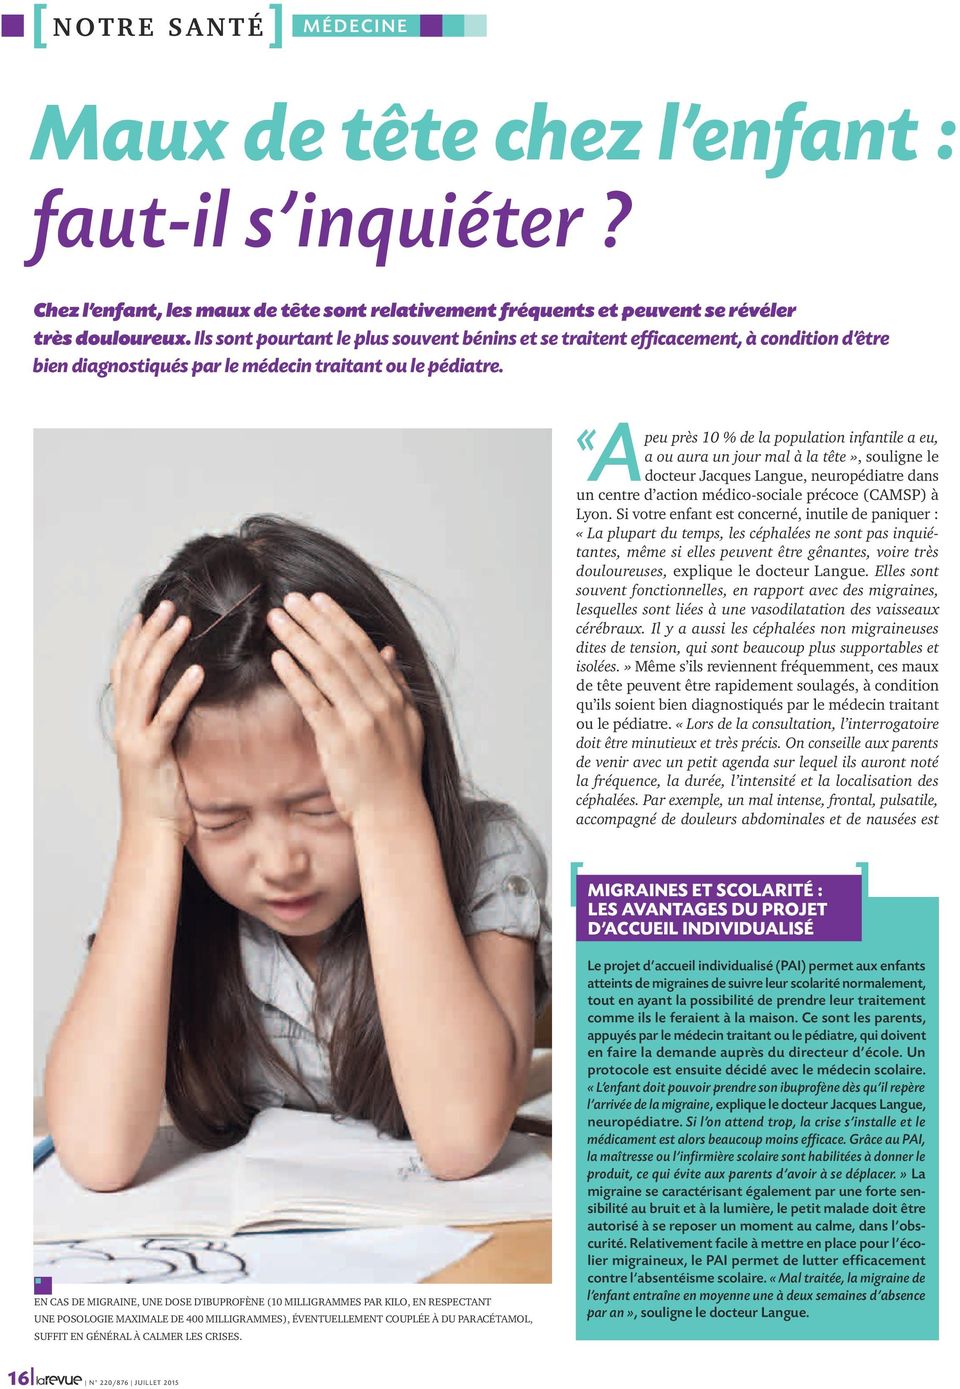 «Apeu près 10 % de la population infantile a eu, a ou aura un jour mal à la tête», souligne le docteur Jacques Langue, neuropédiatre dans un centre d action médico-sociale précoce (CAMSP) à Lyon.